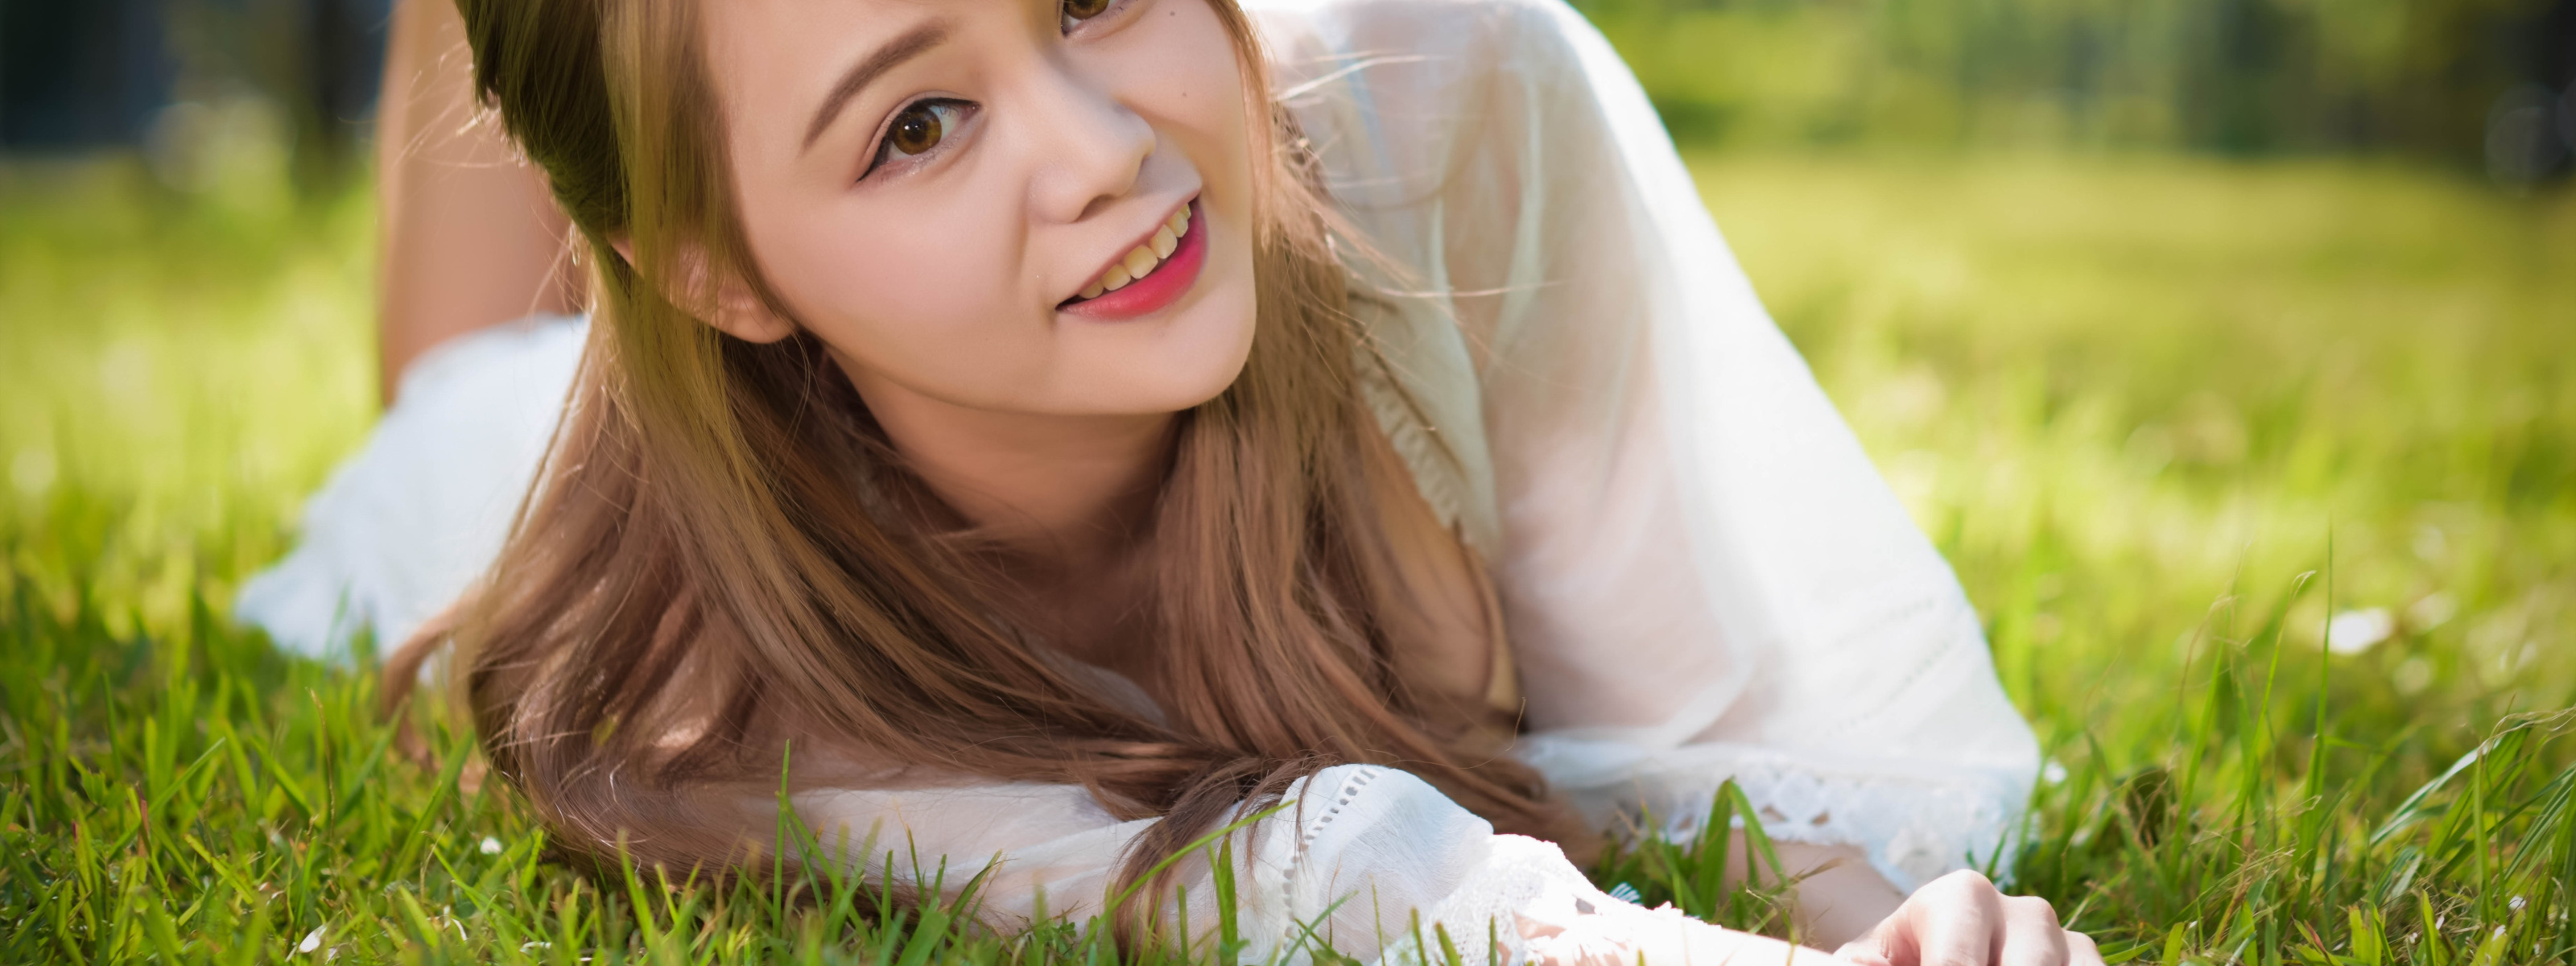 Видео красивеньких. Девочка на траве улыбается. Нежная улыбка девочки подростка. На траве стильно. Девочка 10 лет в траве.